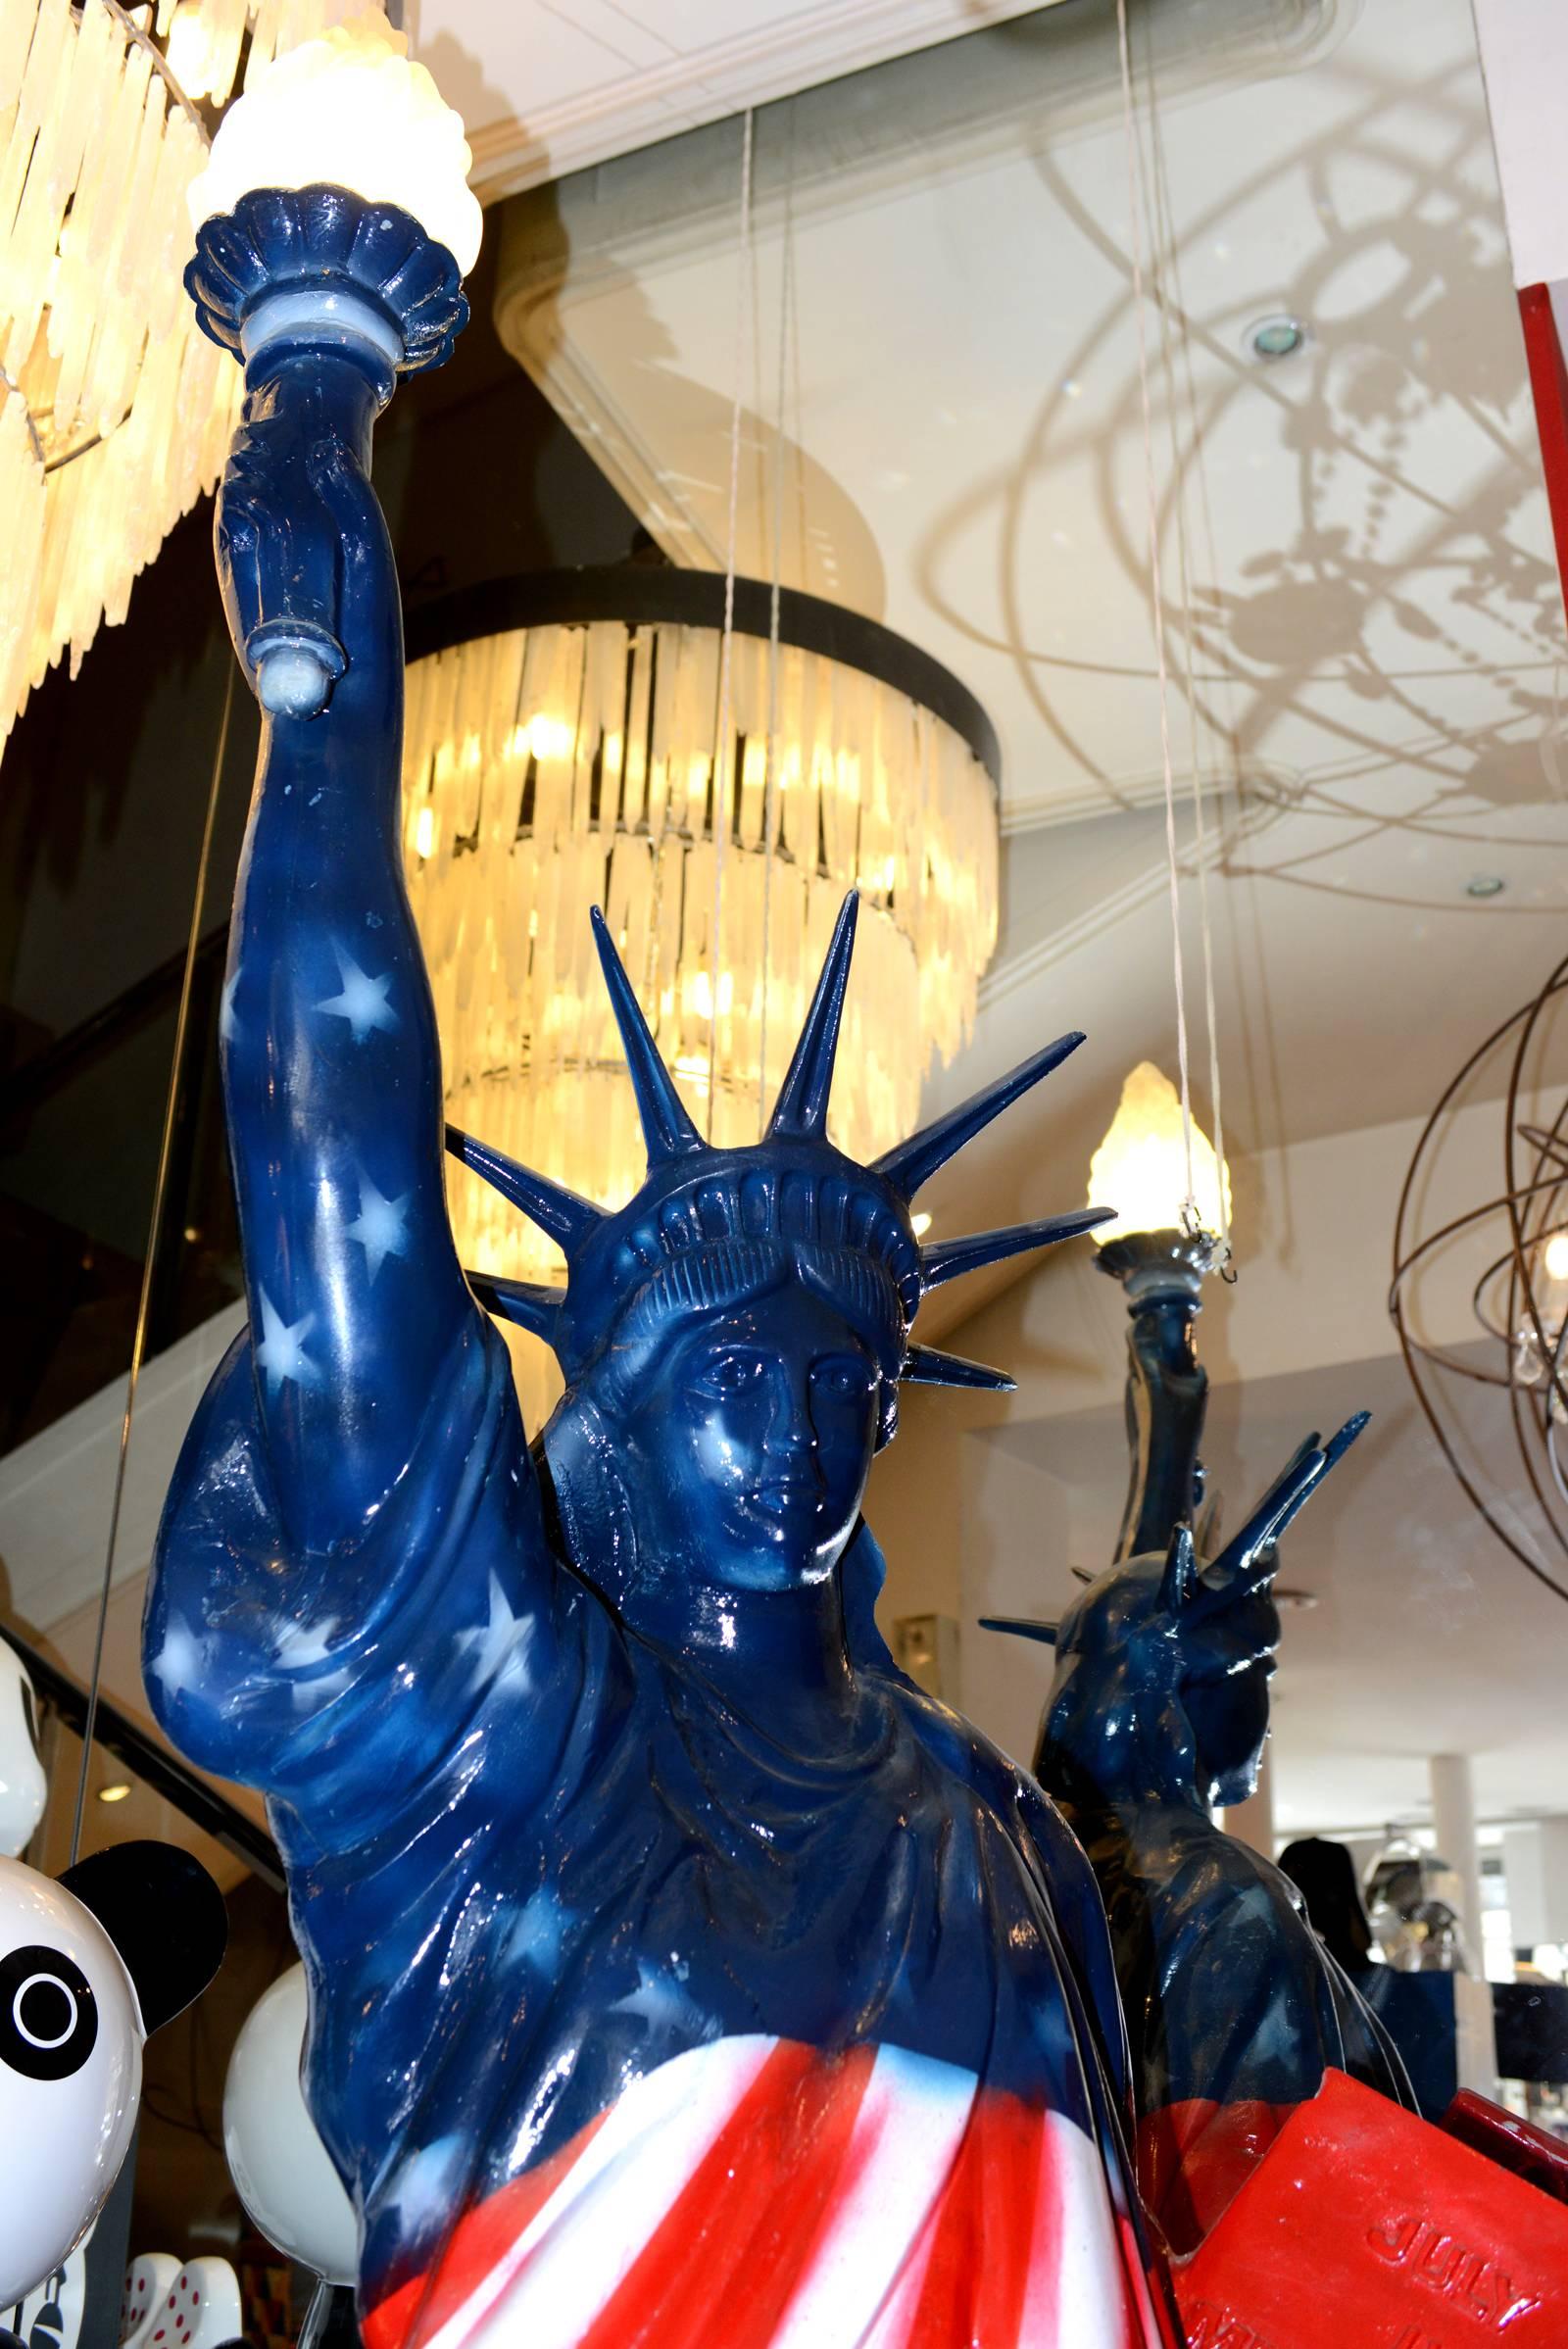 Sculpture Statue de la Liberté Drapeau des Etats-Unis peint.
Sculpture en fusion. Pièce unique et exceptionnelle.
